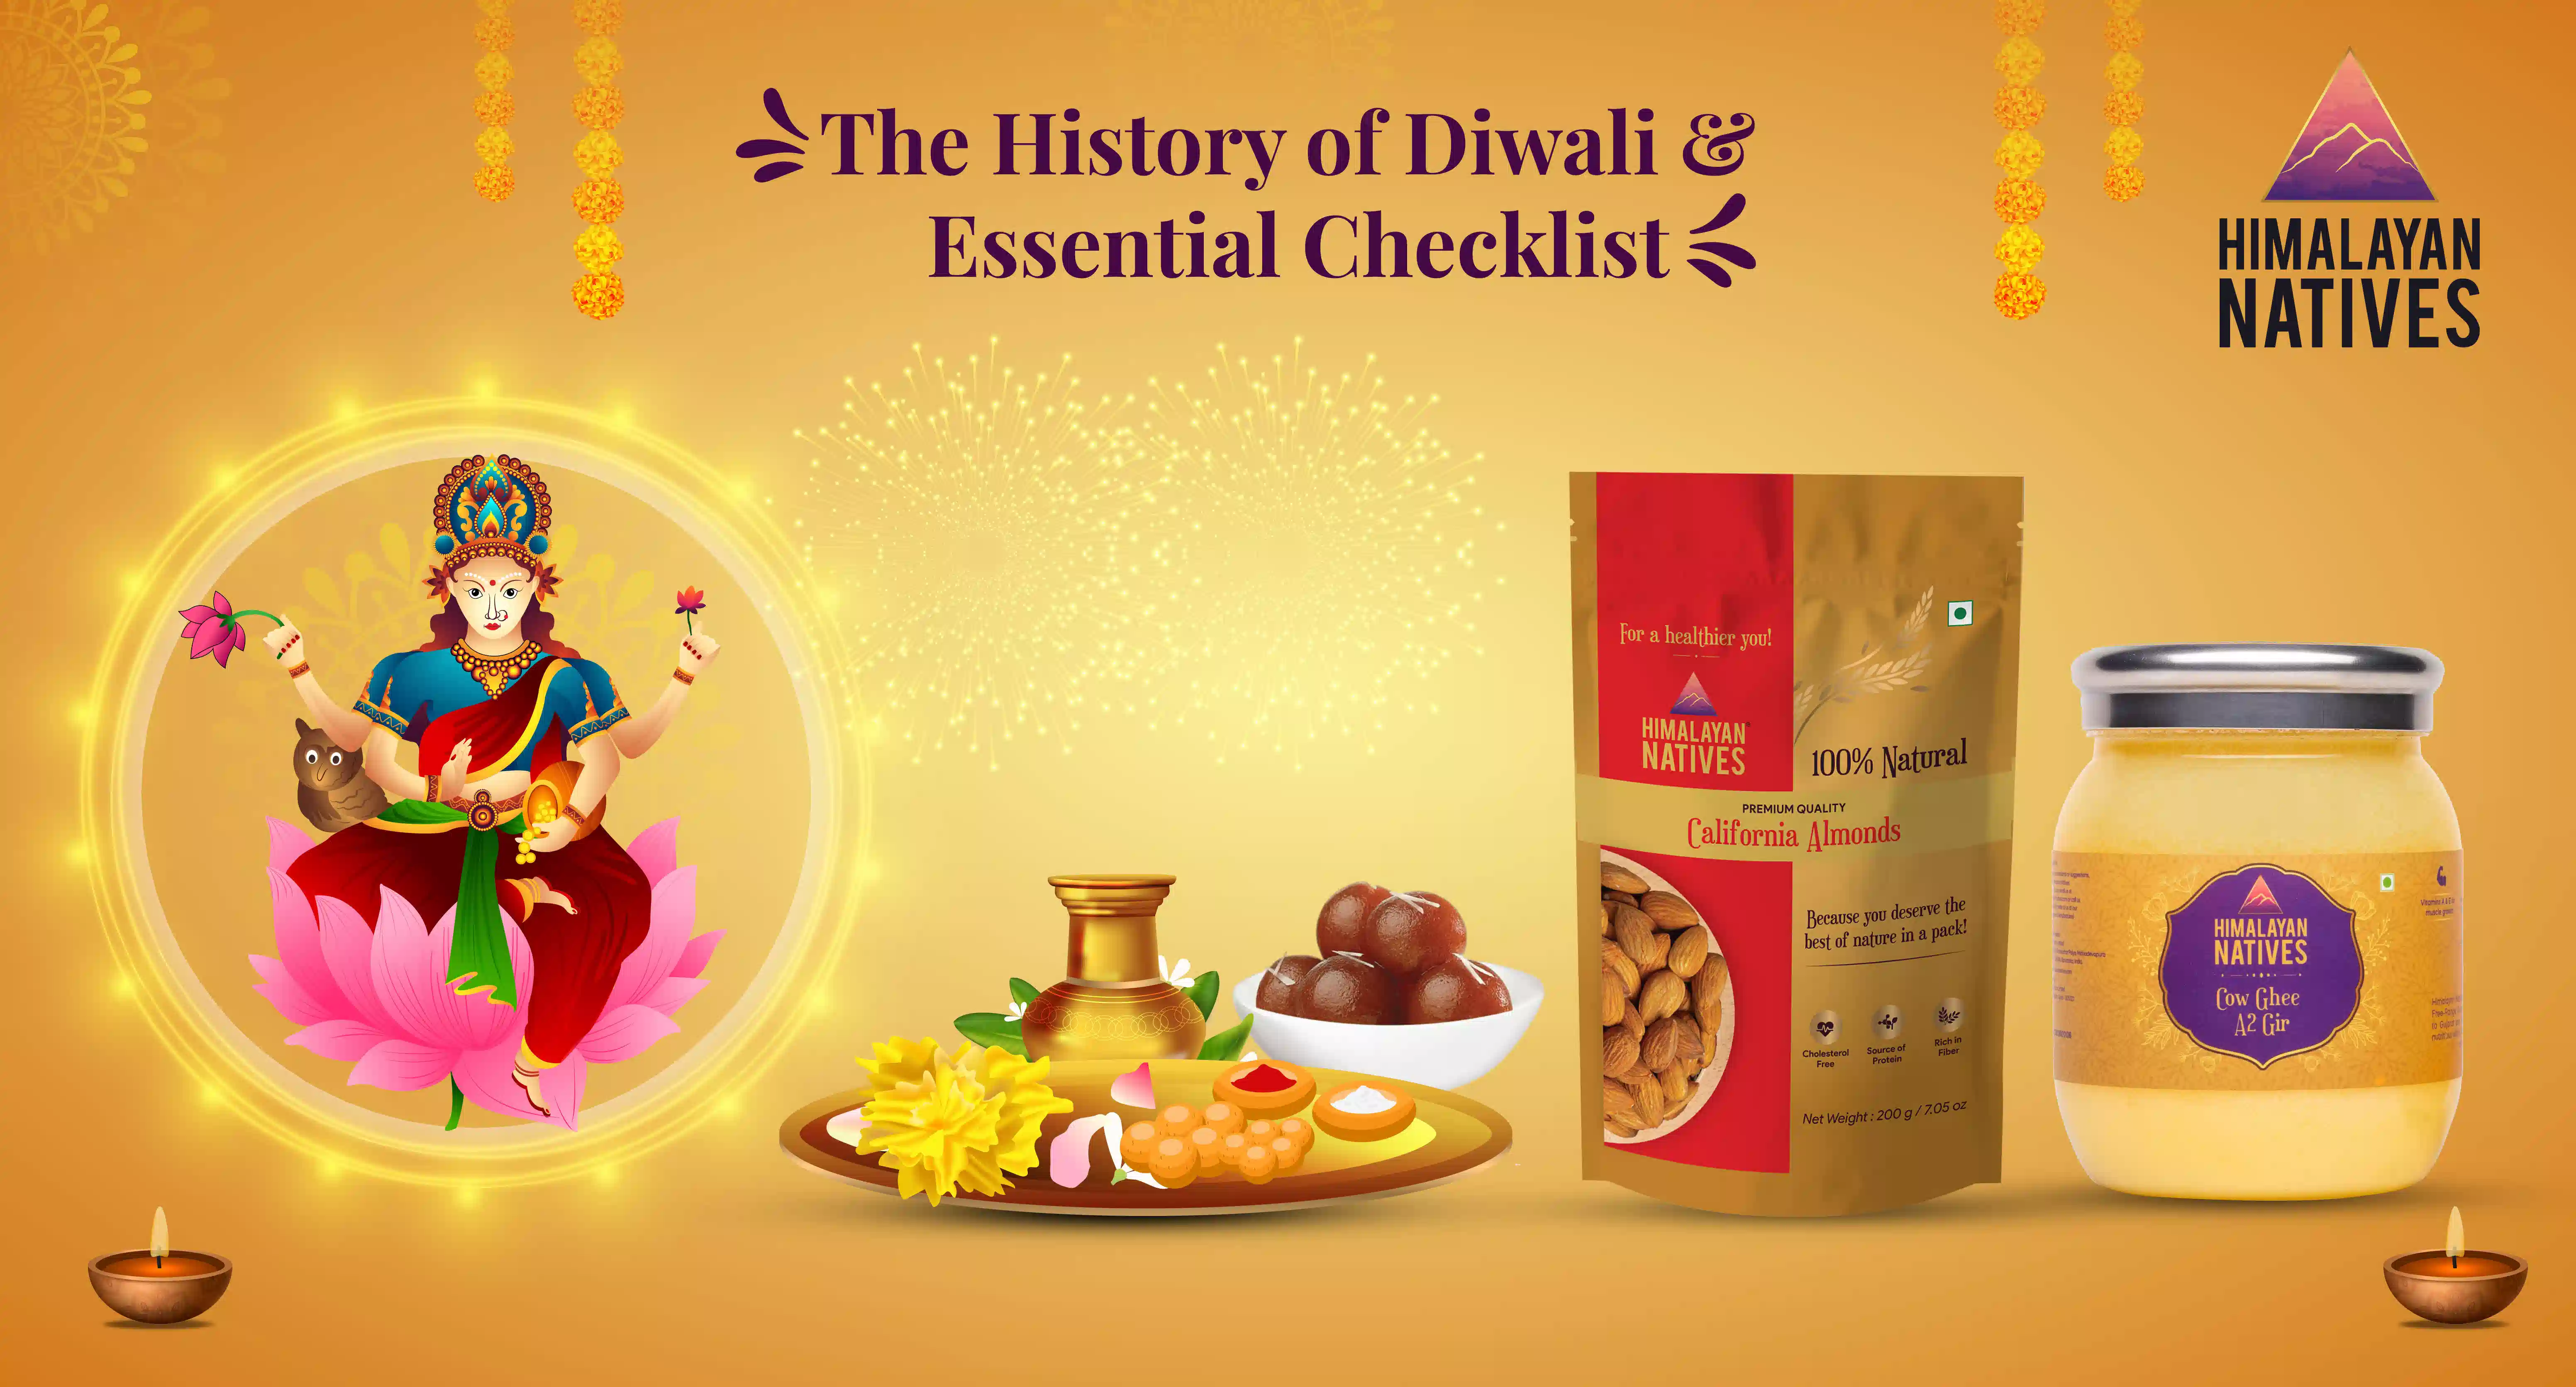 History of Diwali & Essential Checklist